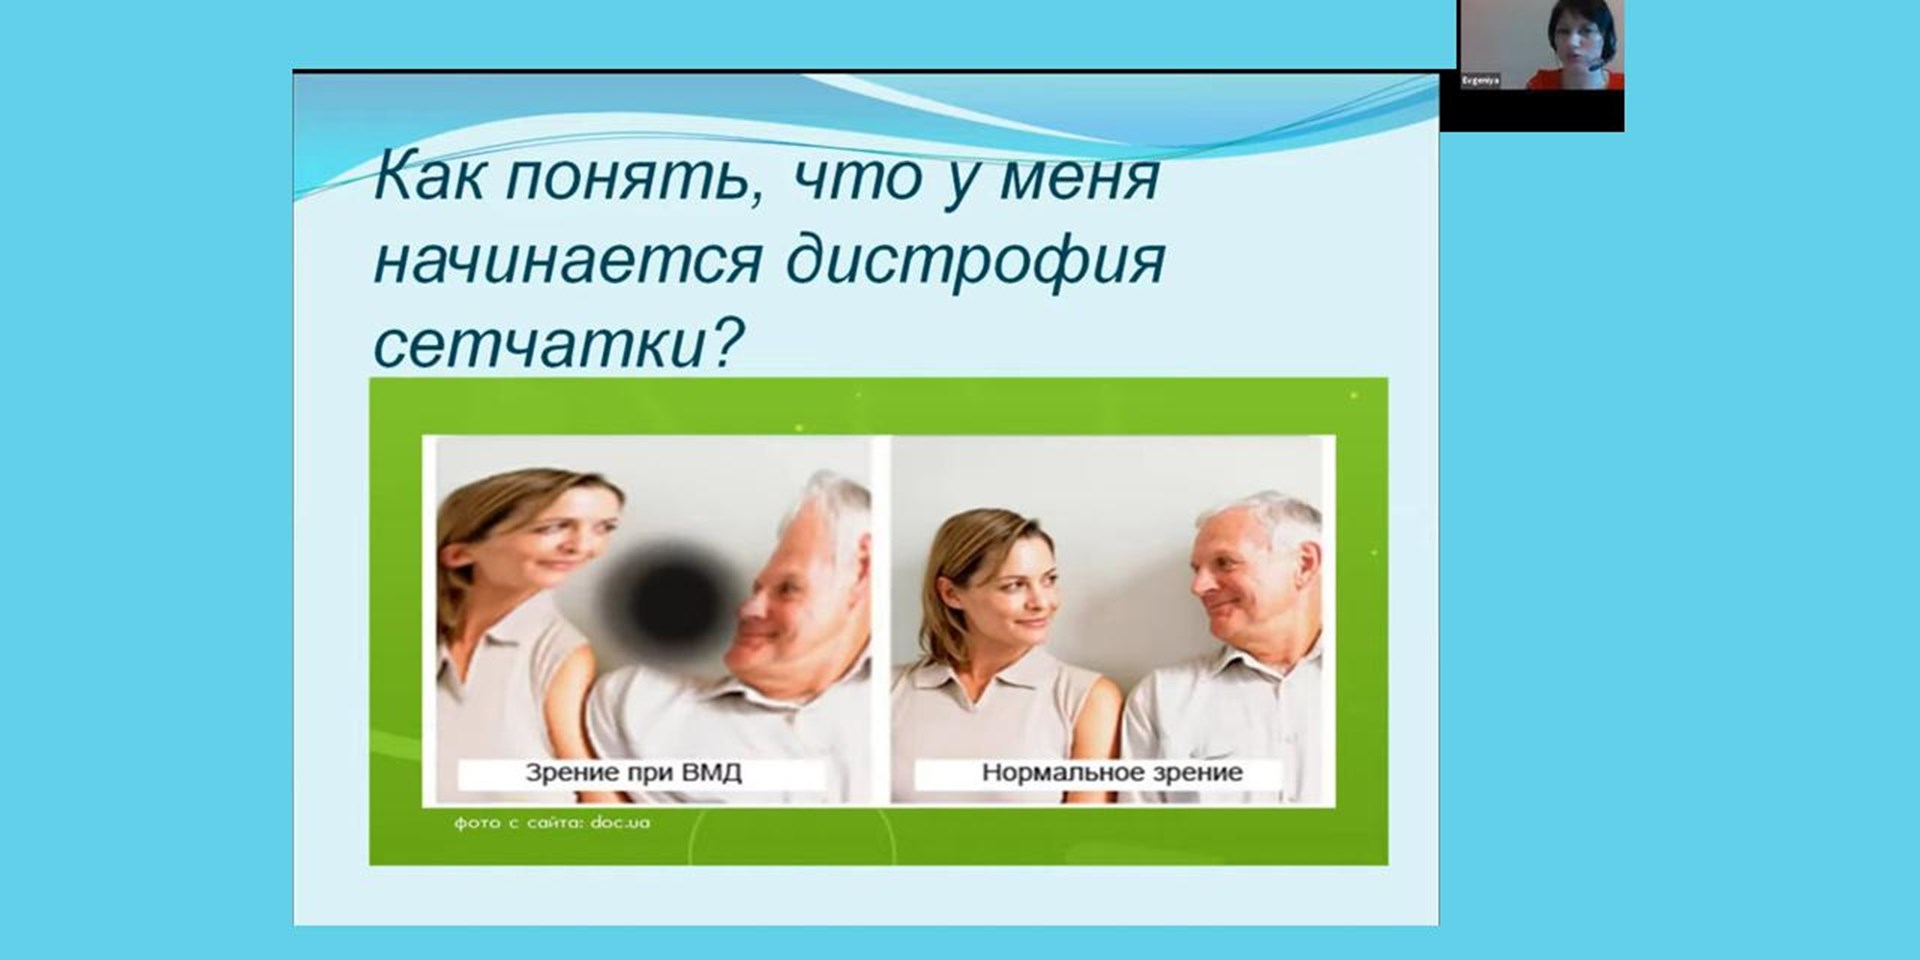 05.05.2021 Москва. 6 мая 2021 приглашаем на вебинар для пациентов с заболеванием глаз ВМД